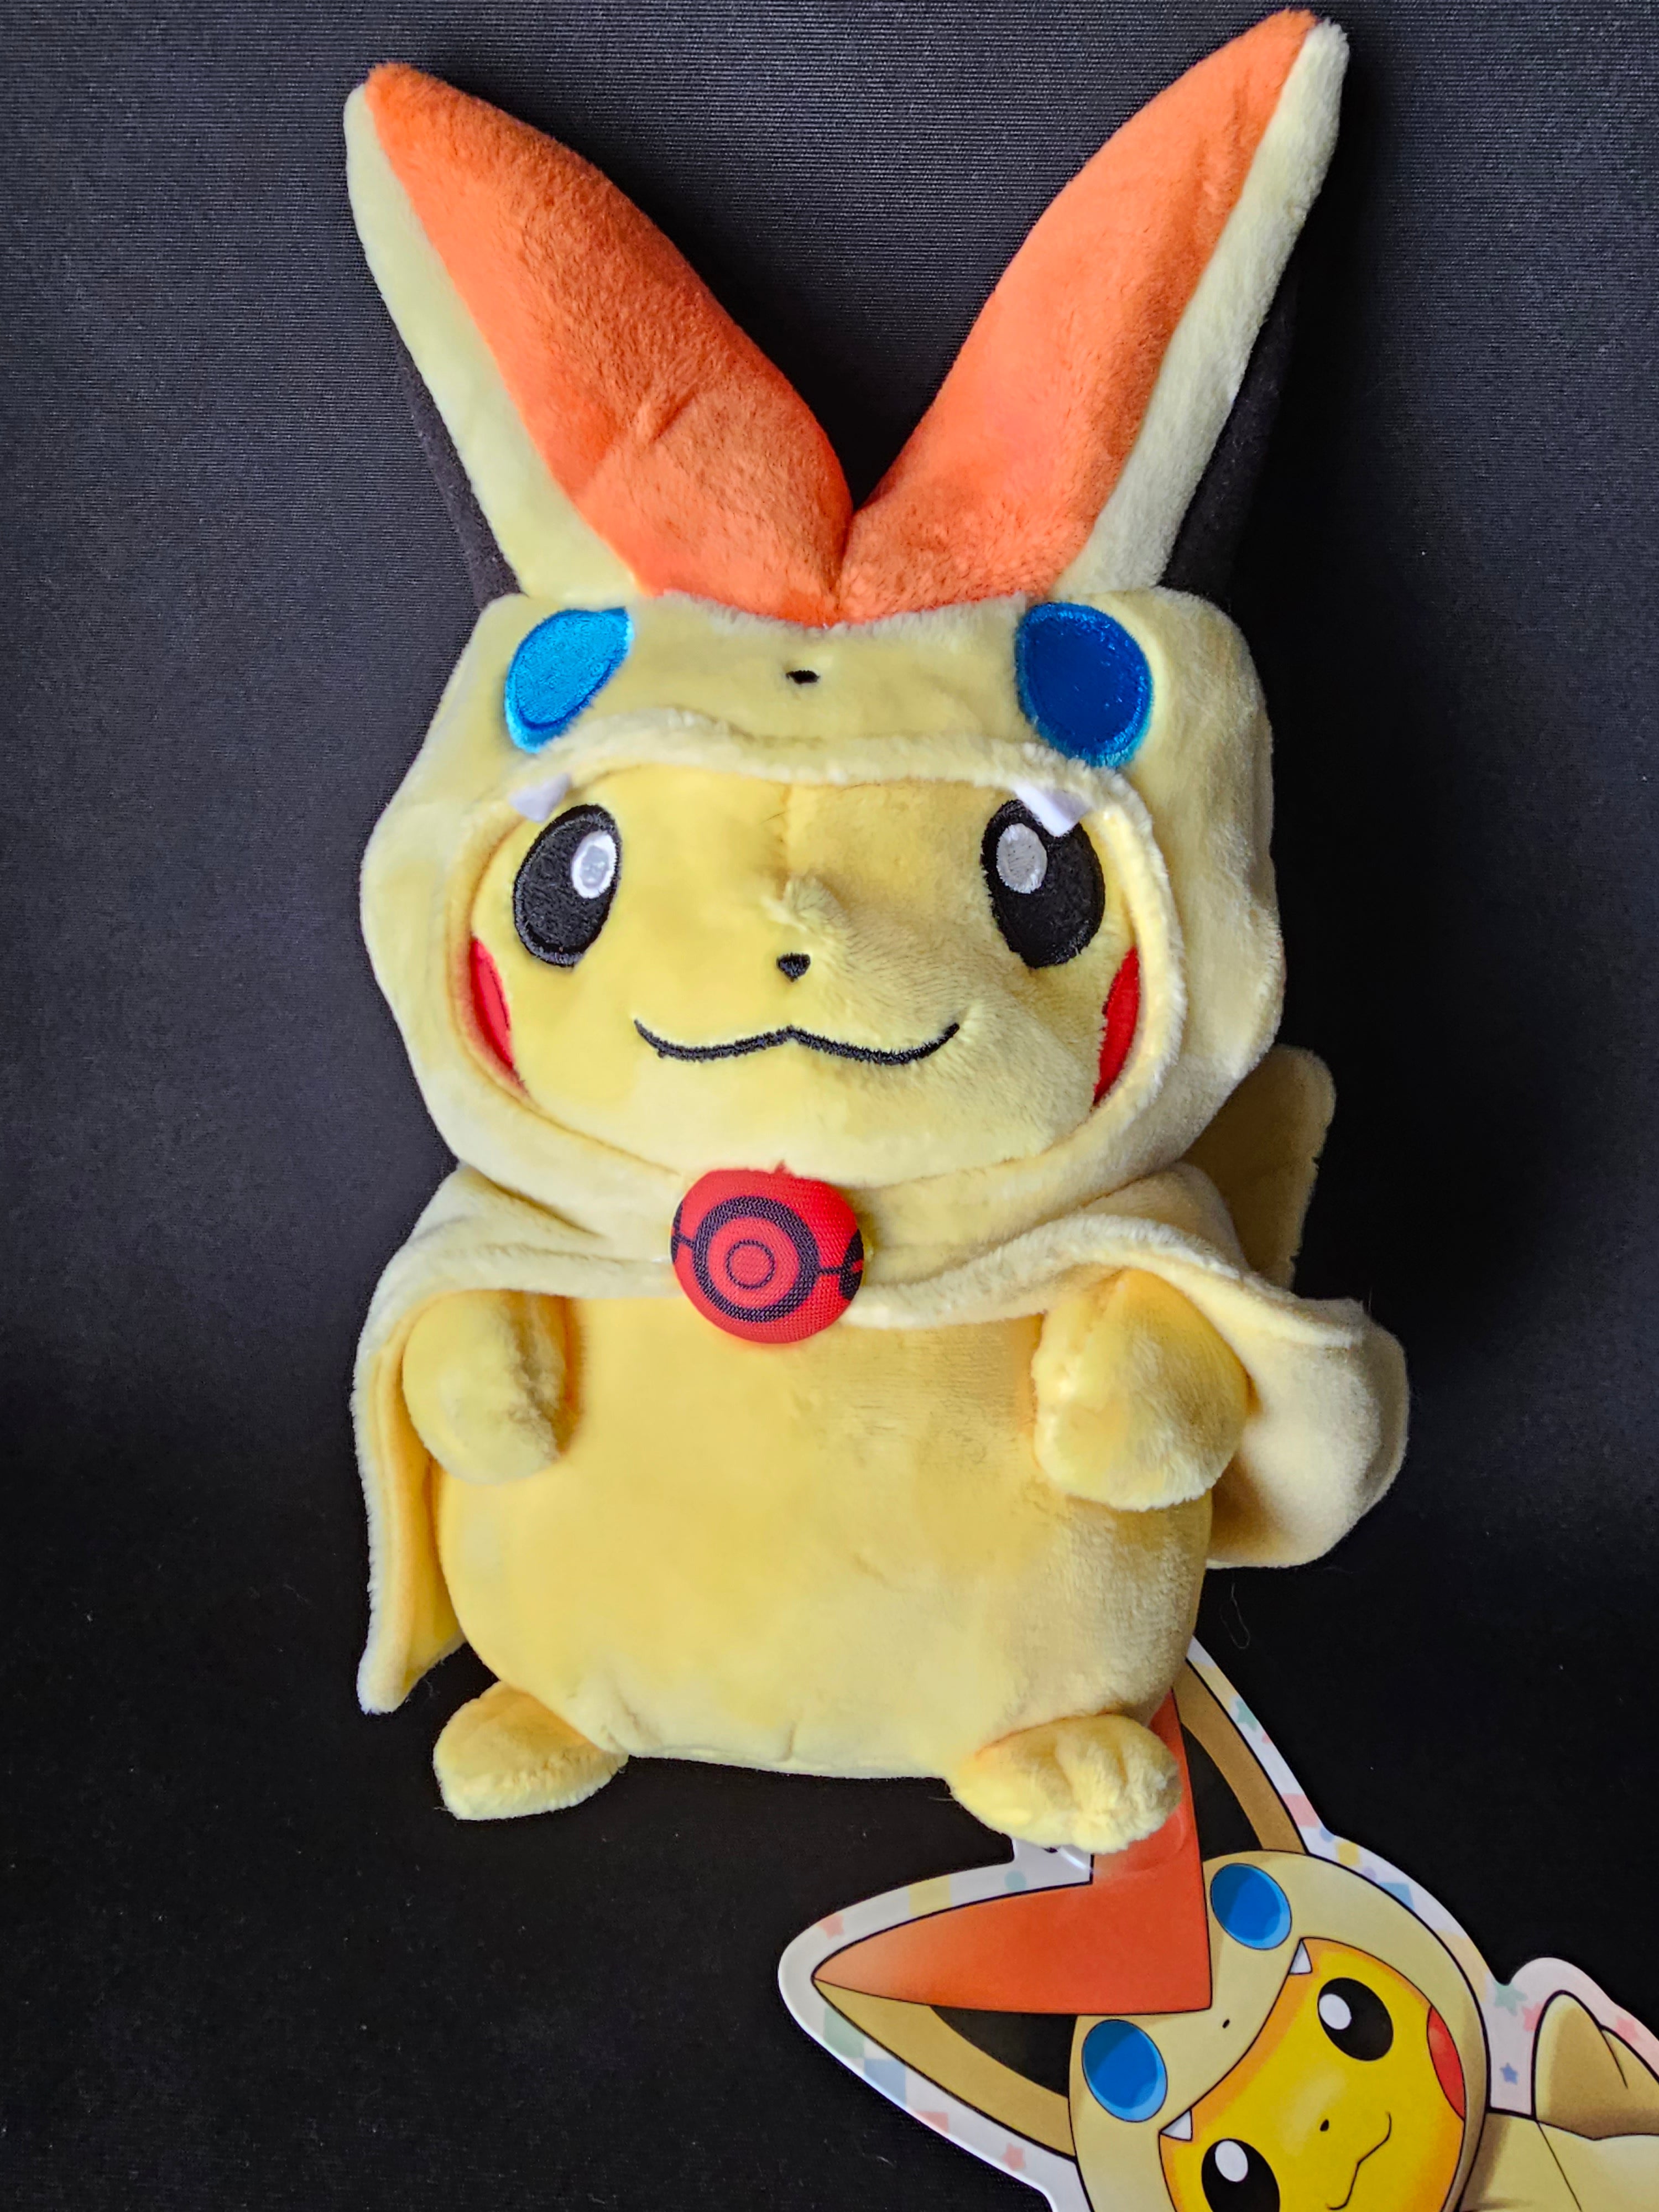 Mega Victini Pikachu Plush Pokemon Center 2016 Official Japanese Poncho